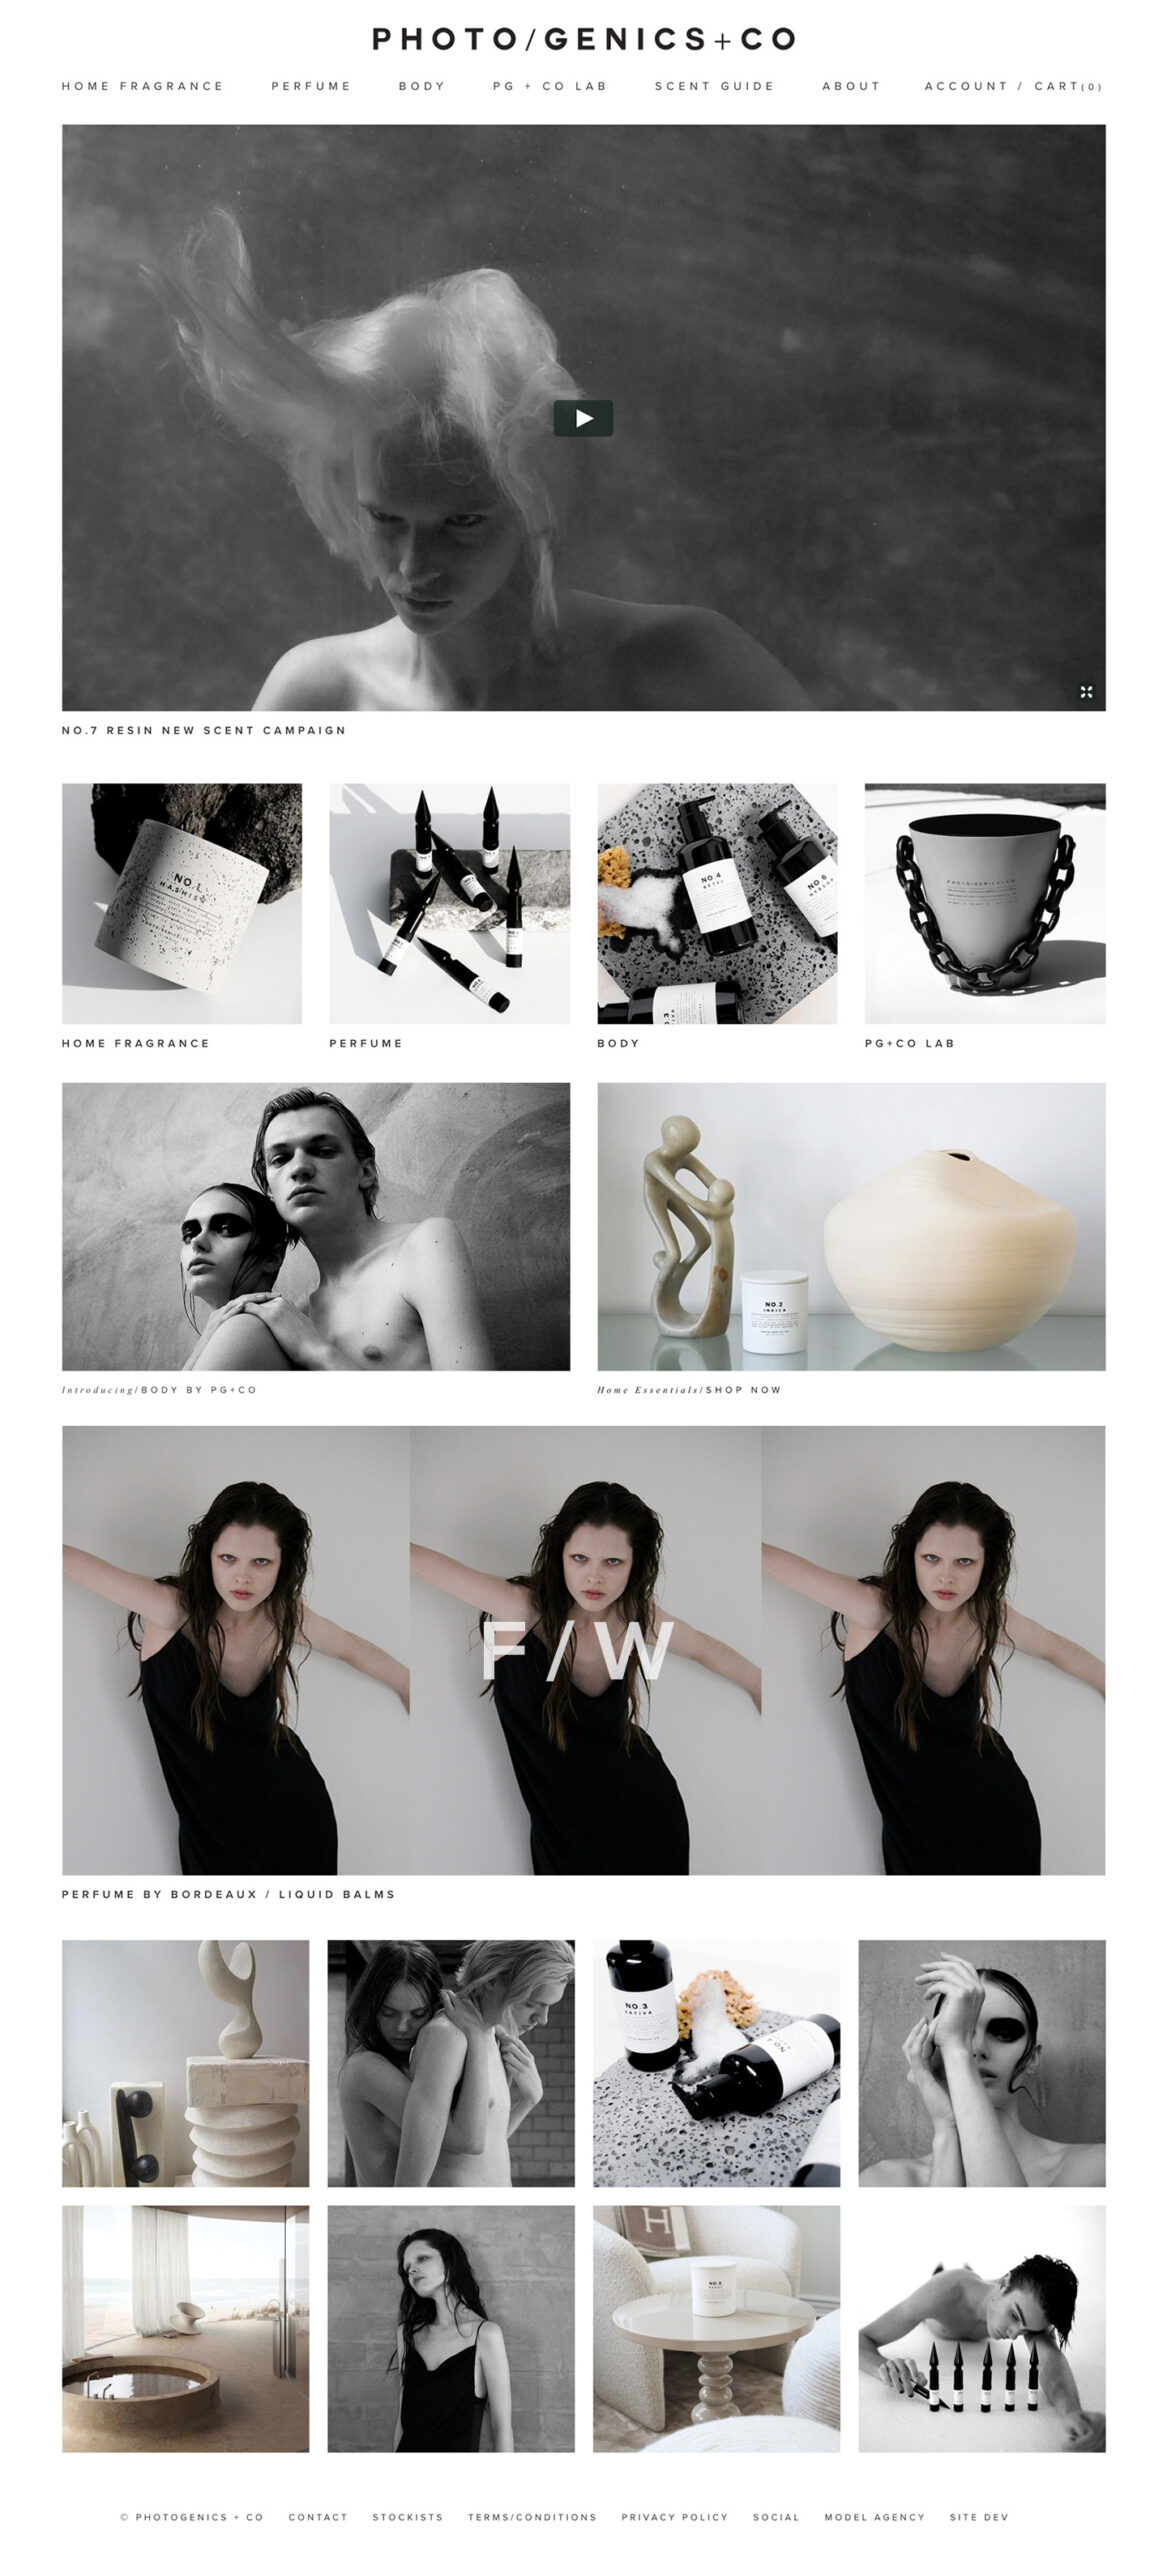 Jeremy Schuler - Web Design Portfolio - Photogenics + CO - Home Mockup